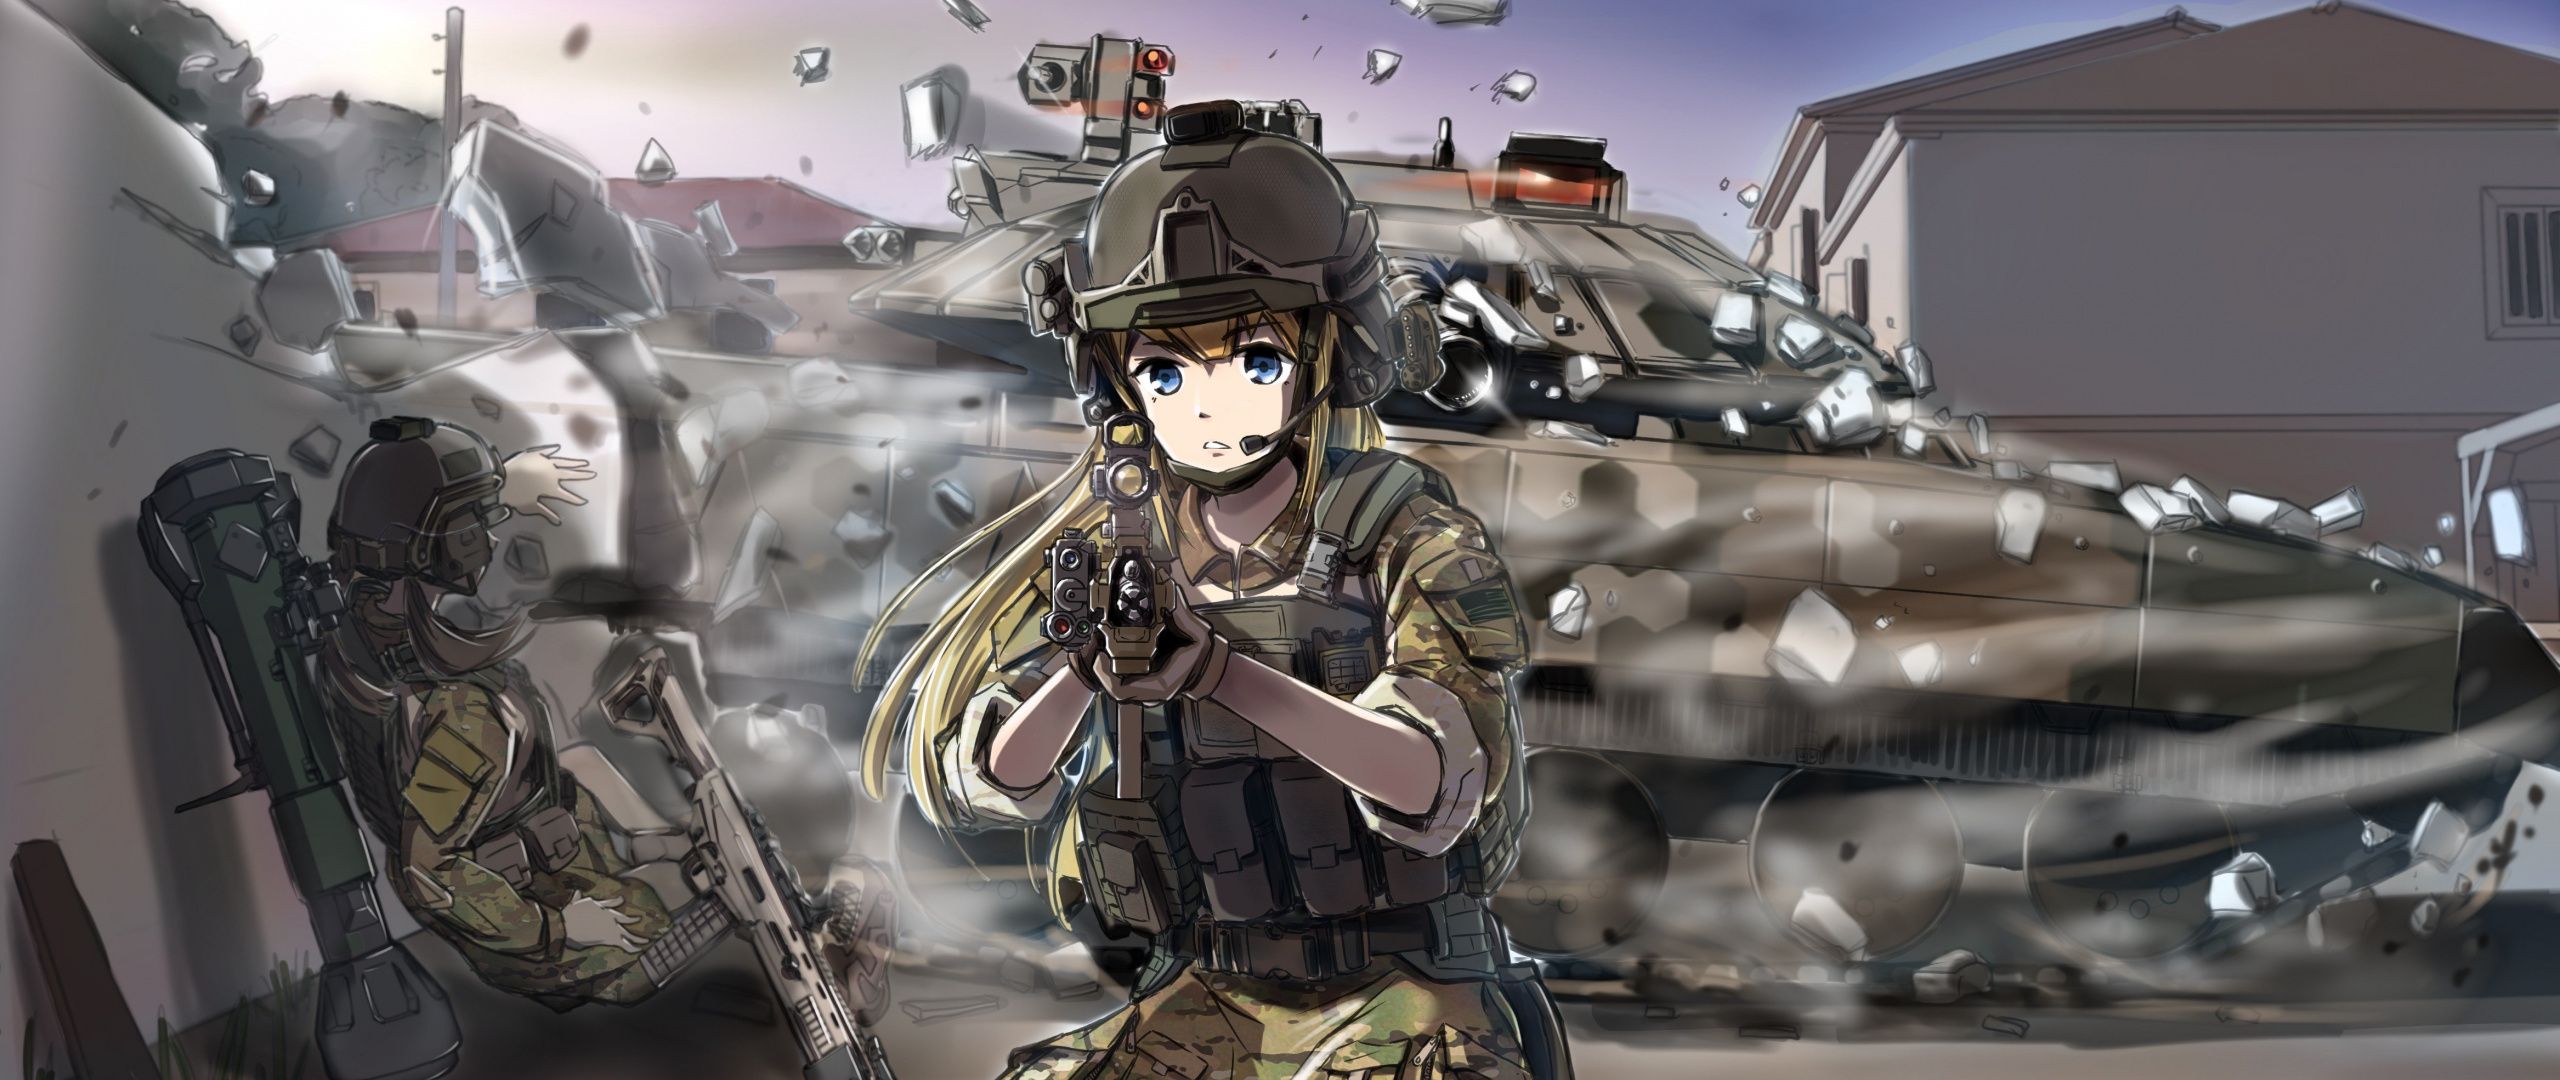 Desktop Wallpaper Original Characters Military Anime Girl, HD